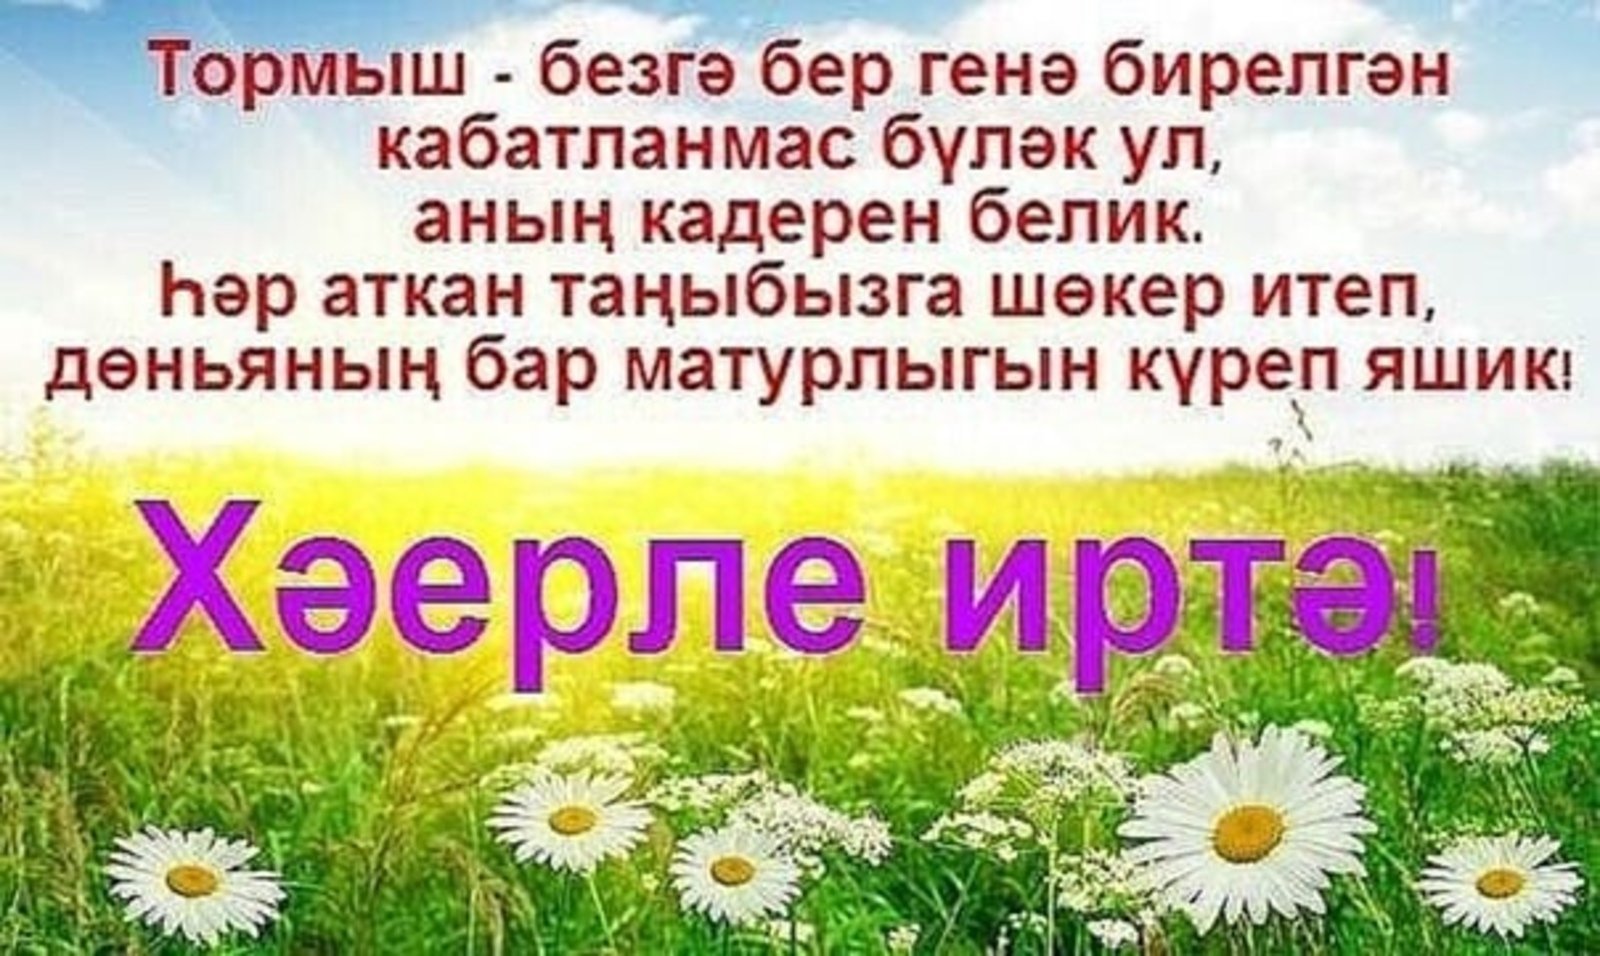 доброе утро на башкирском языке картинки красивые